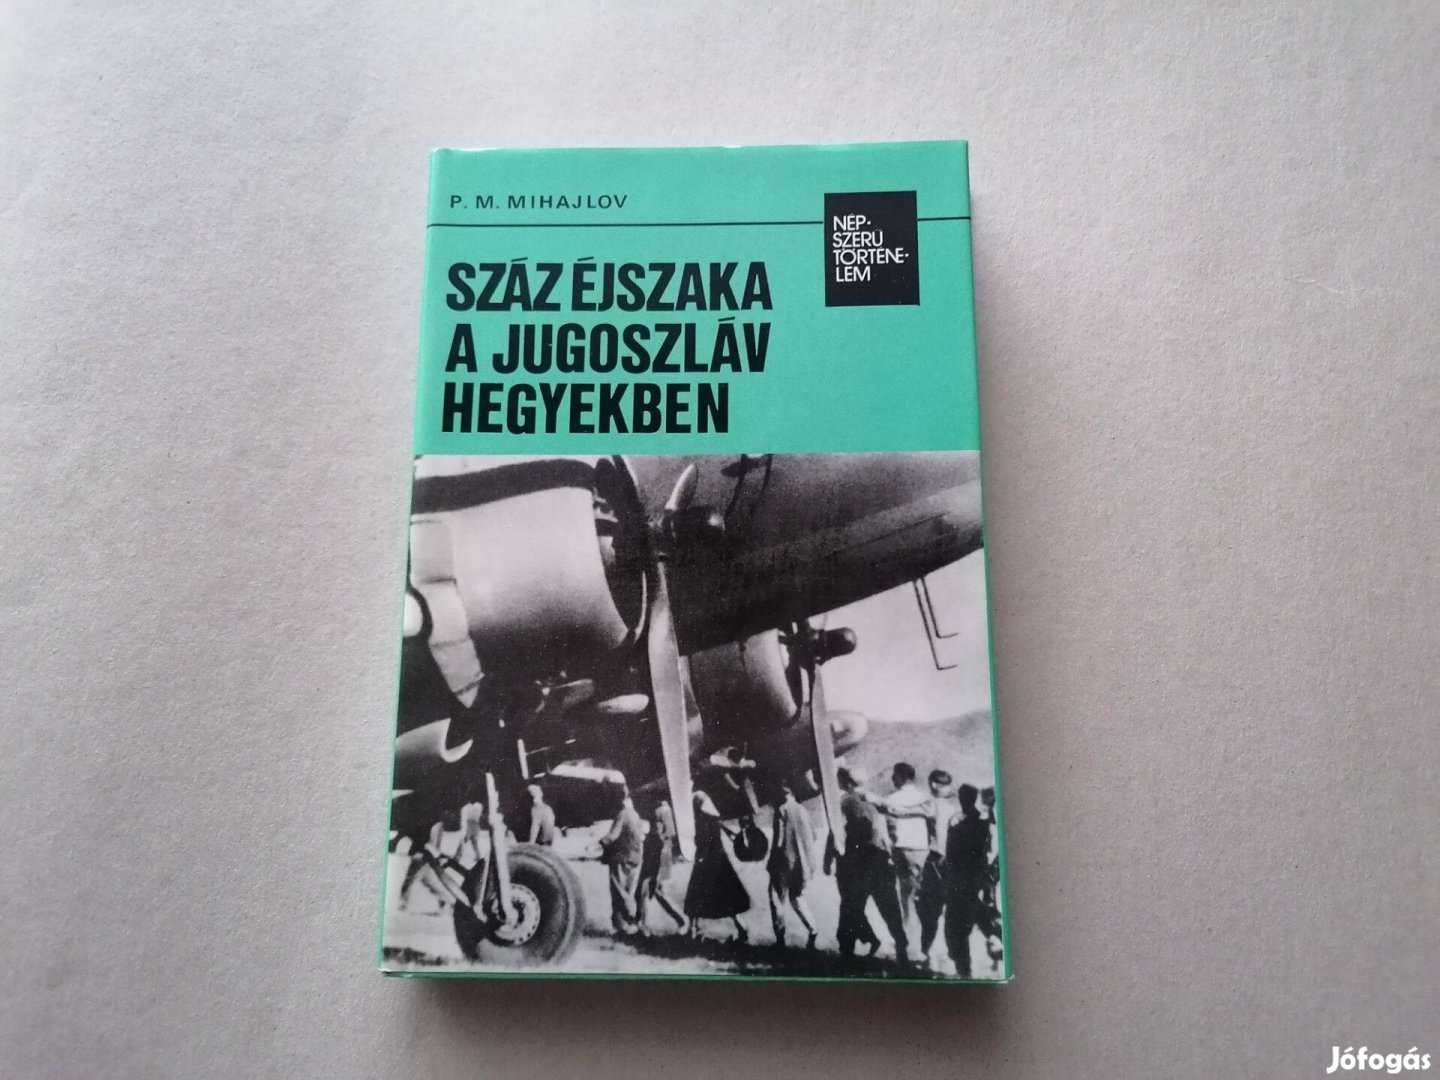 P.M. Mihajlov: Száz éjszaka a jugoszláv hegyekben című könyve eladó !